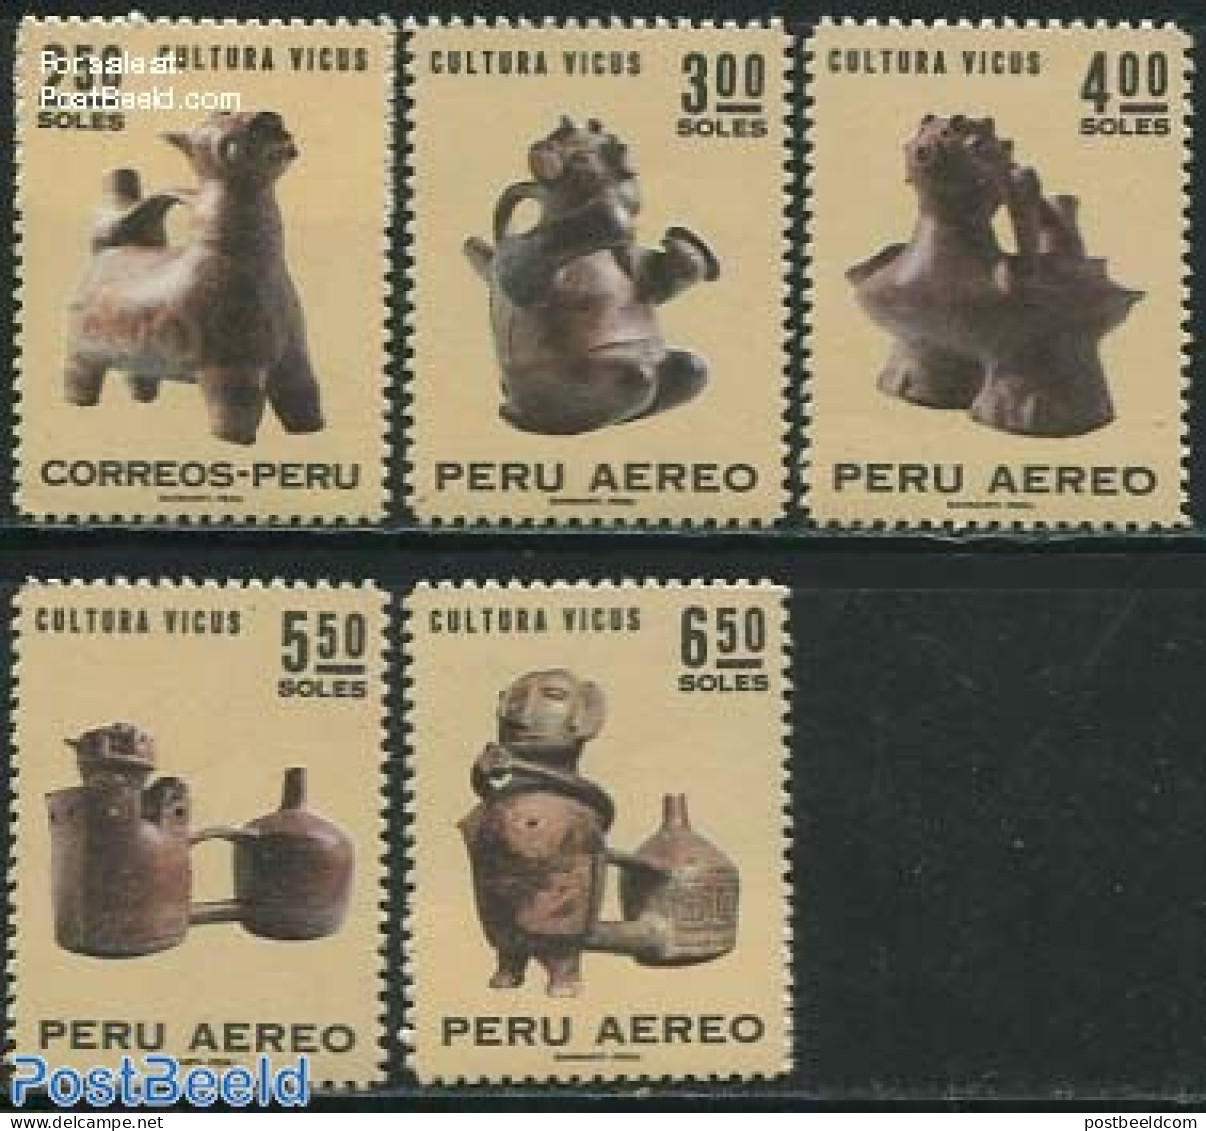 Peru 1970 Culture 5v, Mint NH, Art - Art & Antique Objects - Sculpture - Escultura